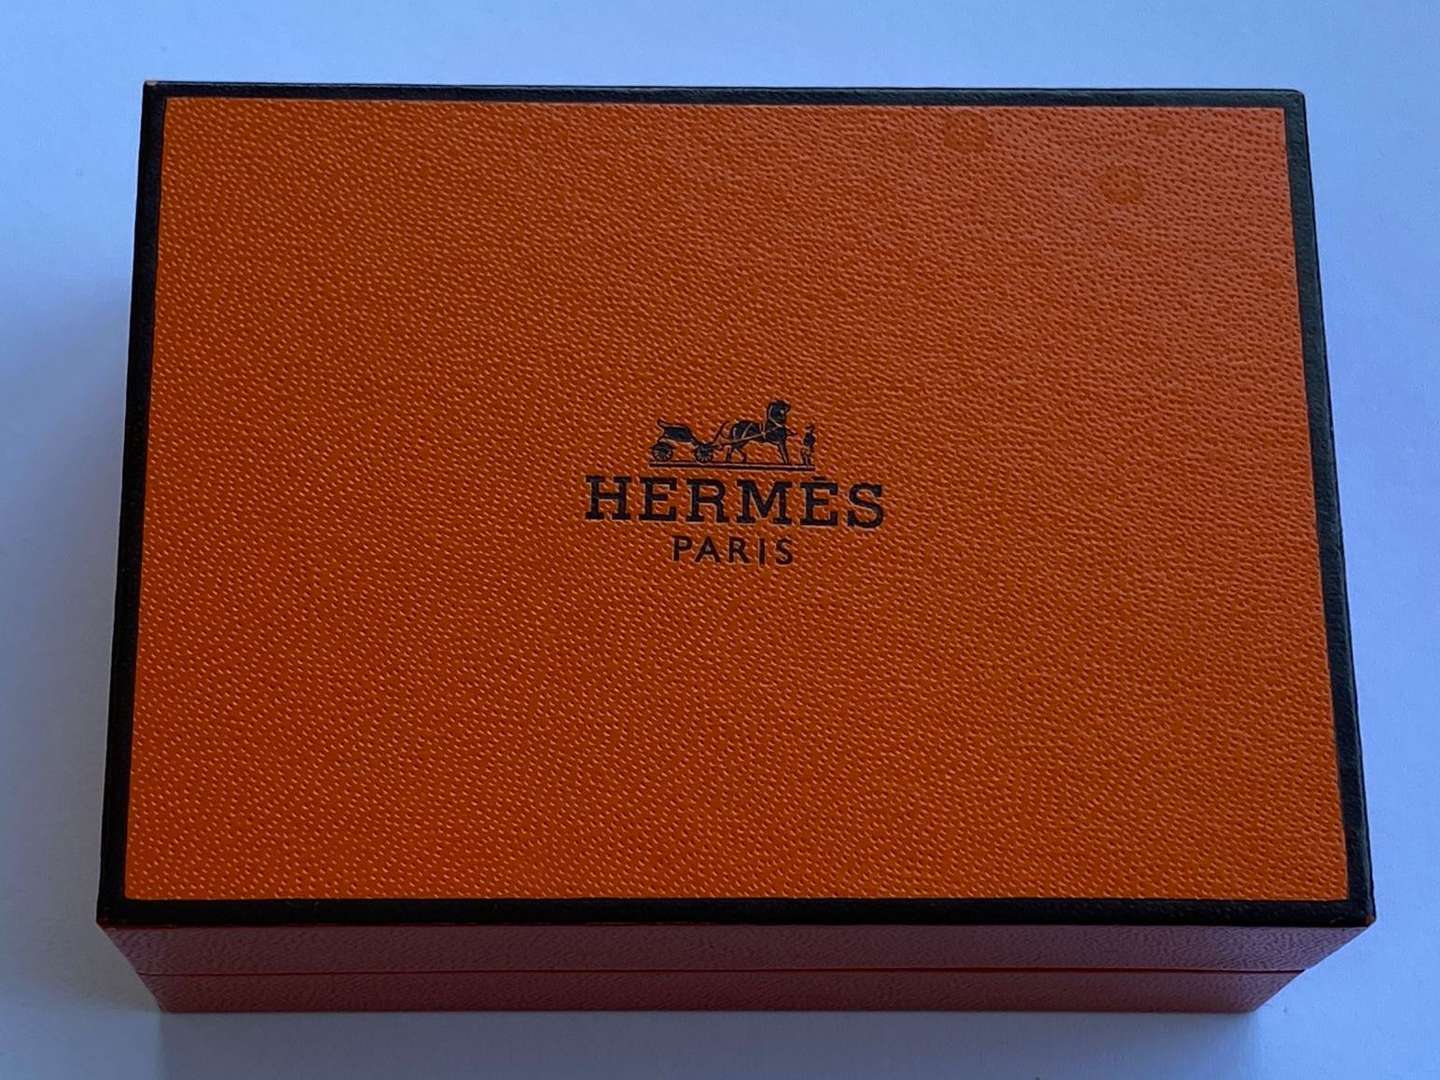 <p>HERMES, a boxed pair of silver “Anchor Chain” cufflinks, designed by Gaetan de Percin</p>